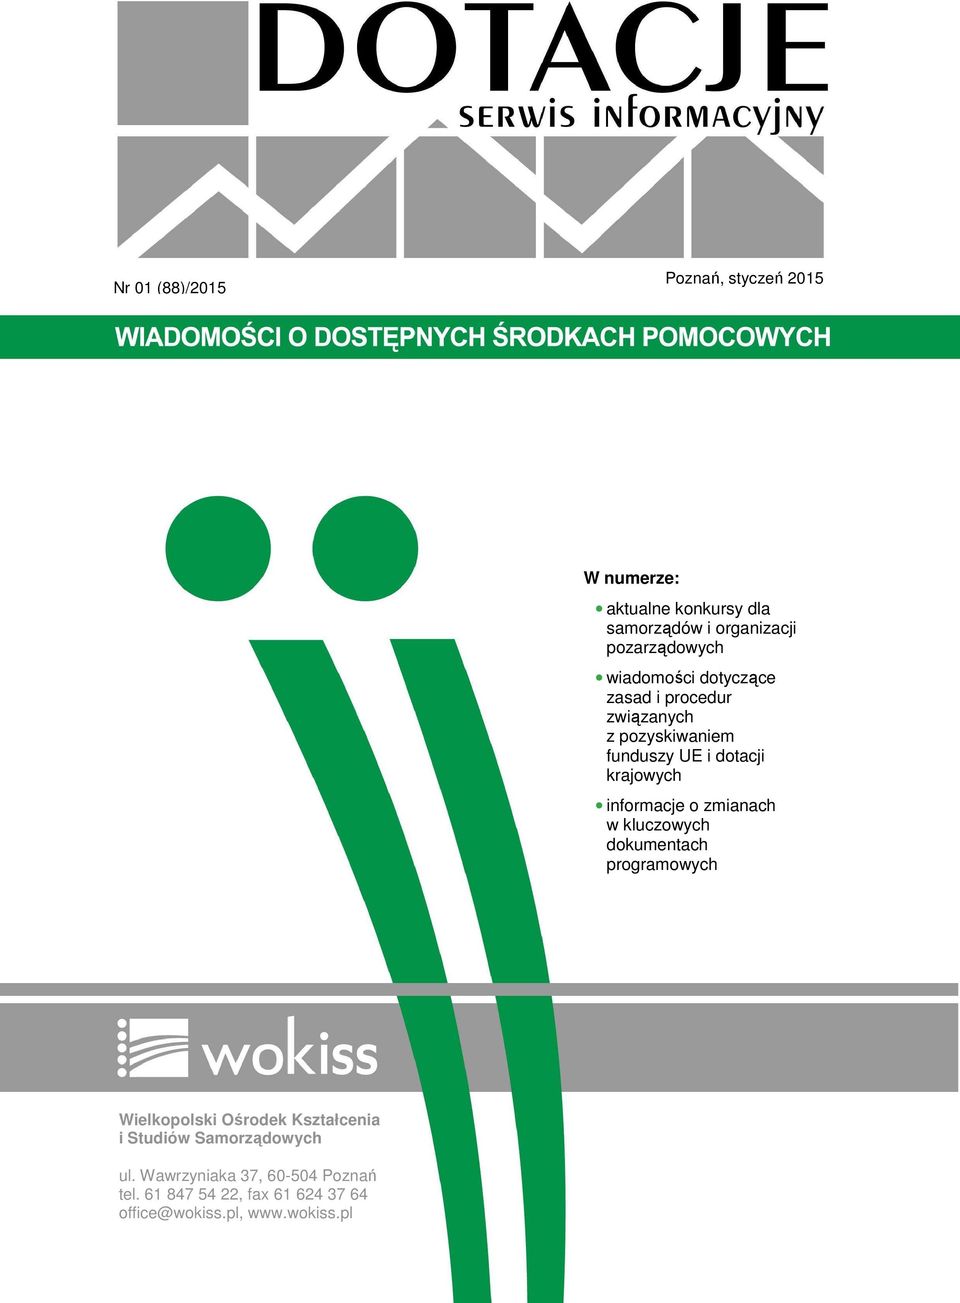 krajowych informacje o zmianach w kluczowych dokumentach programowych Wielkopolski Ośrodek Kształcenia i